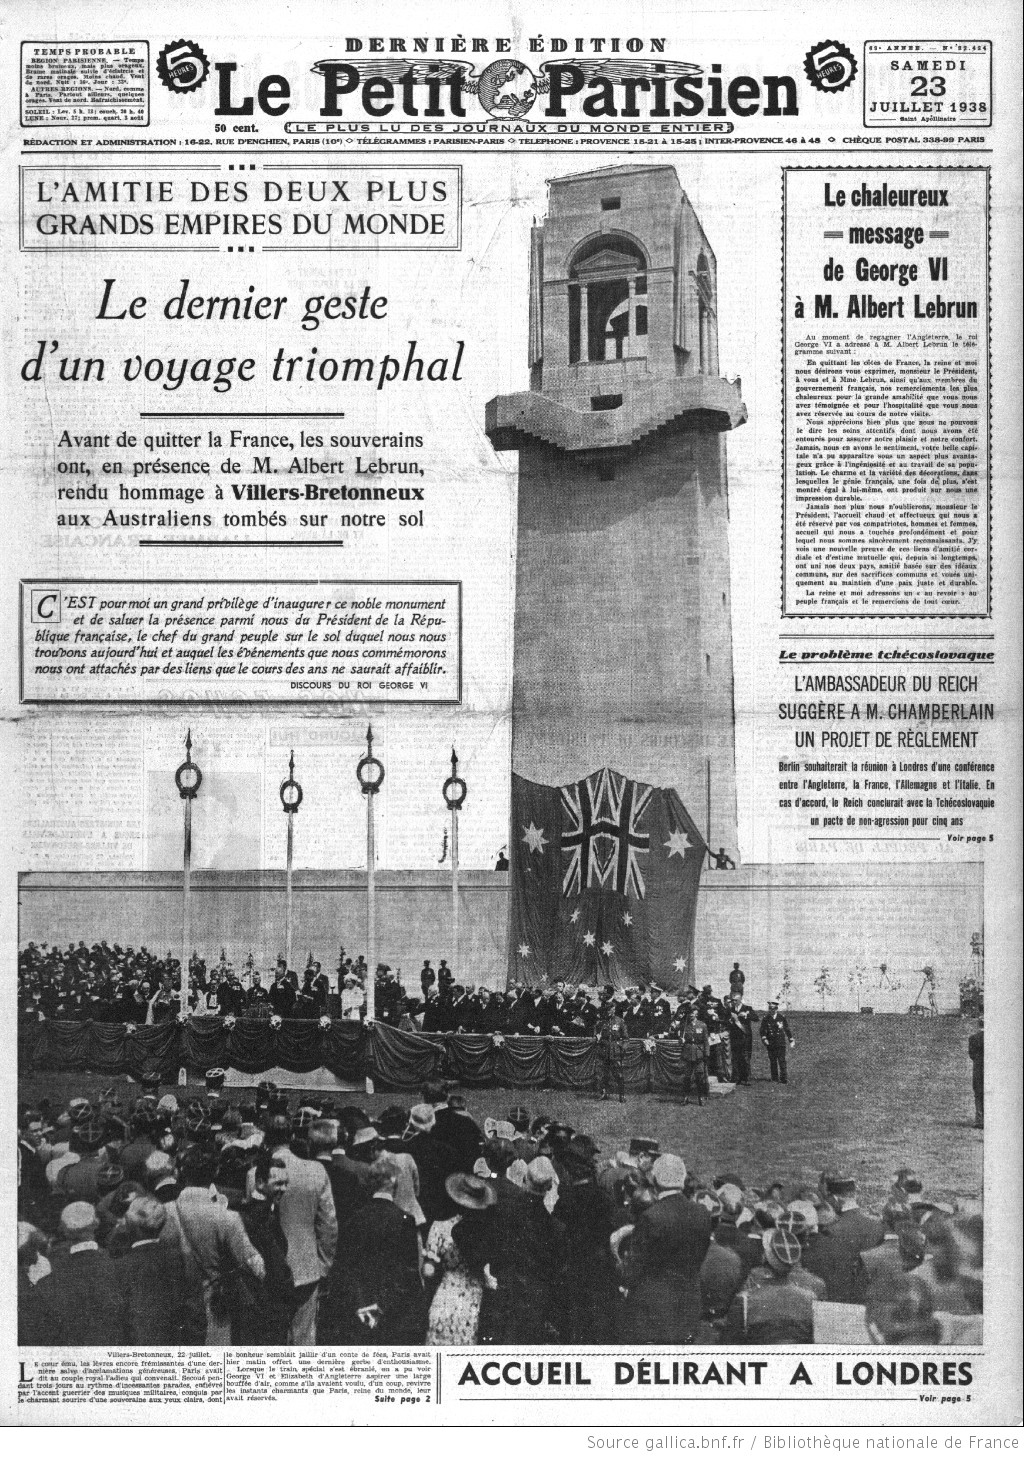 Le Petit Parisien du 23-07-1938 (Gallica.bnf.fr)